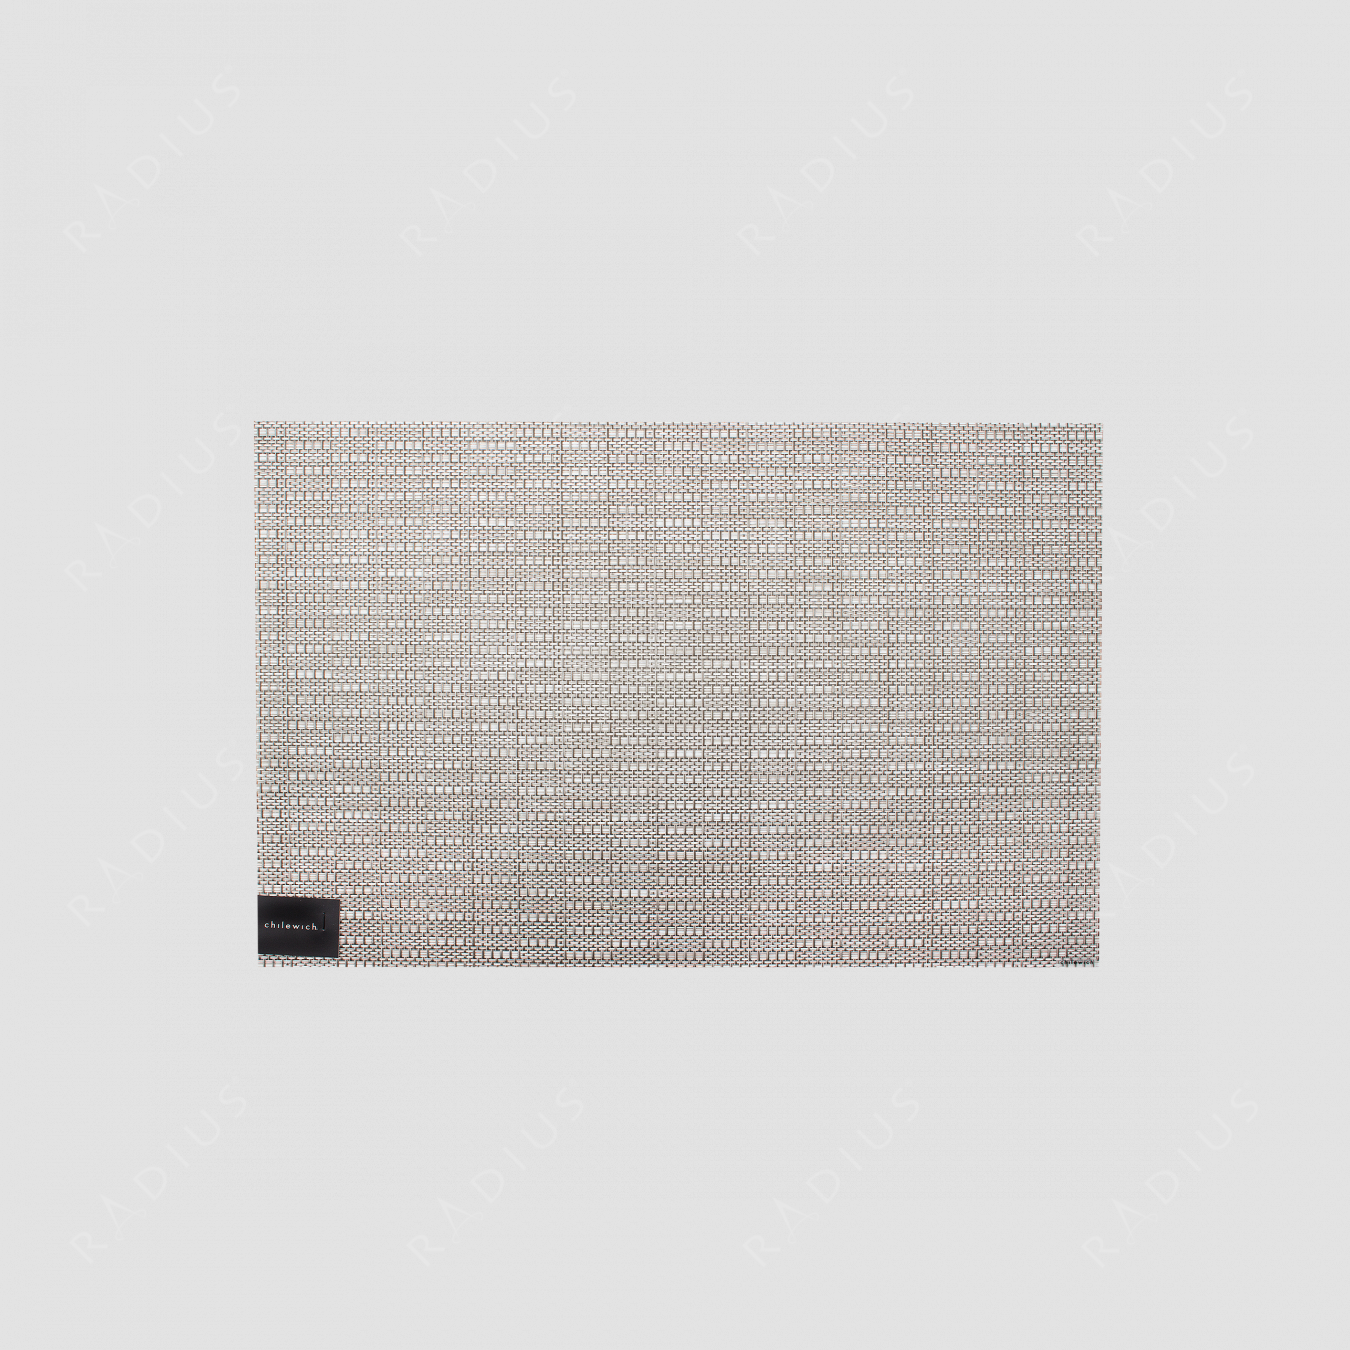 Салфетка подстановочная, жаккардовое плетение, винил, (36х48), Pebble, серия Thatch, CHILEWICH, США